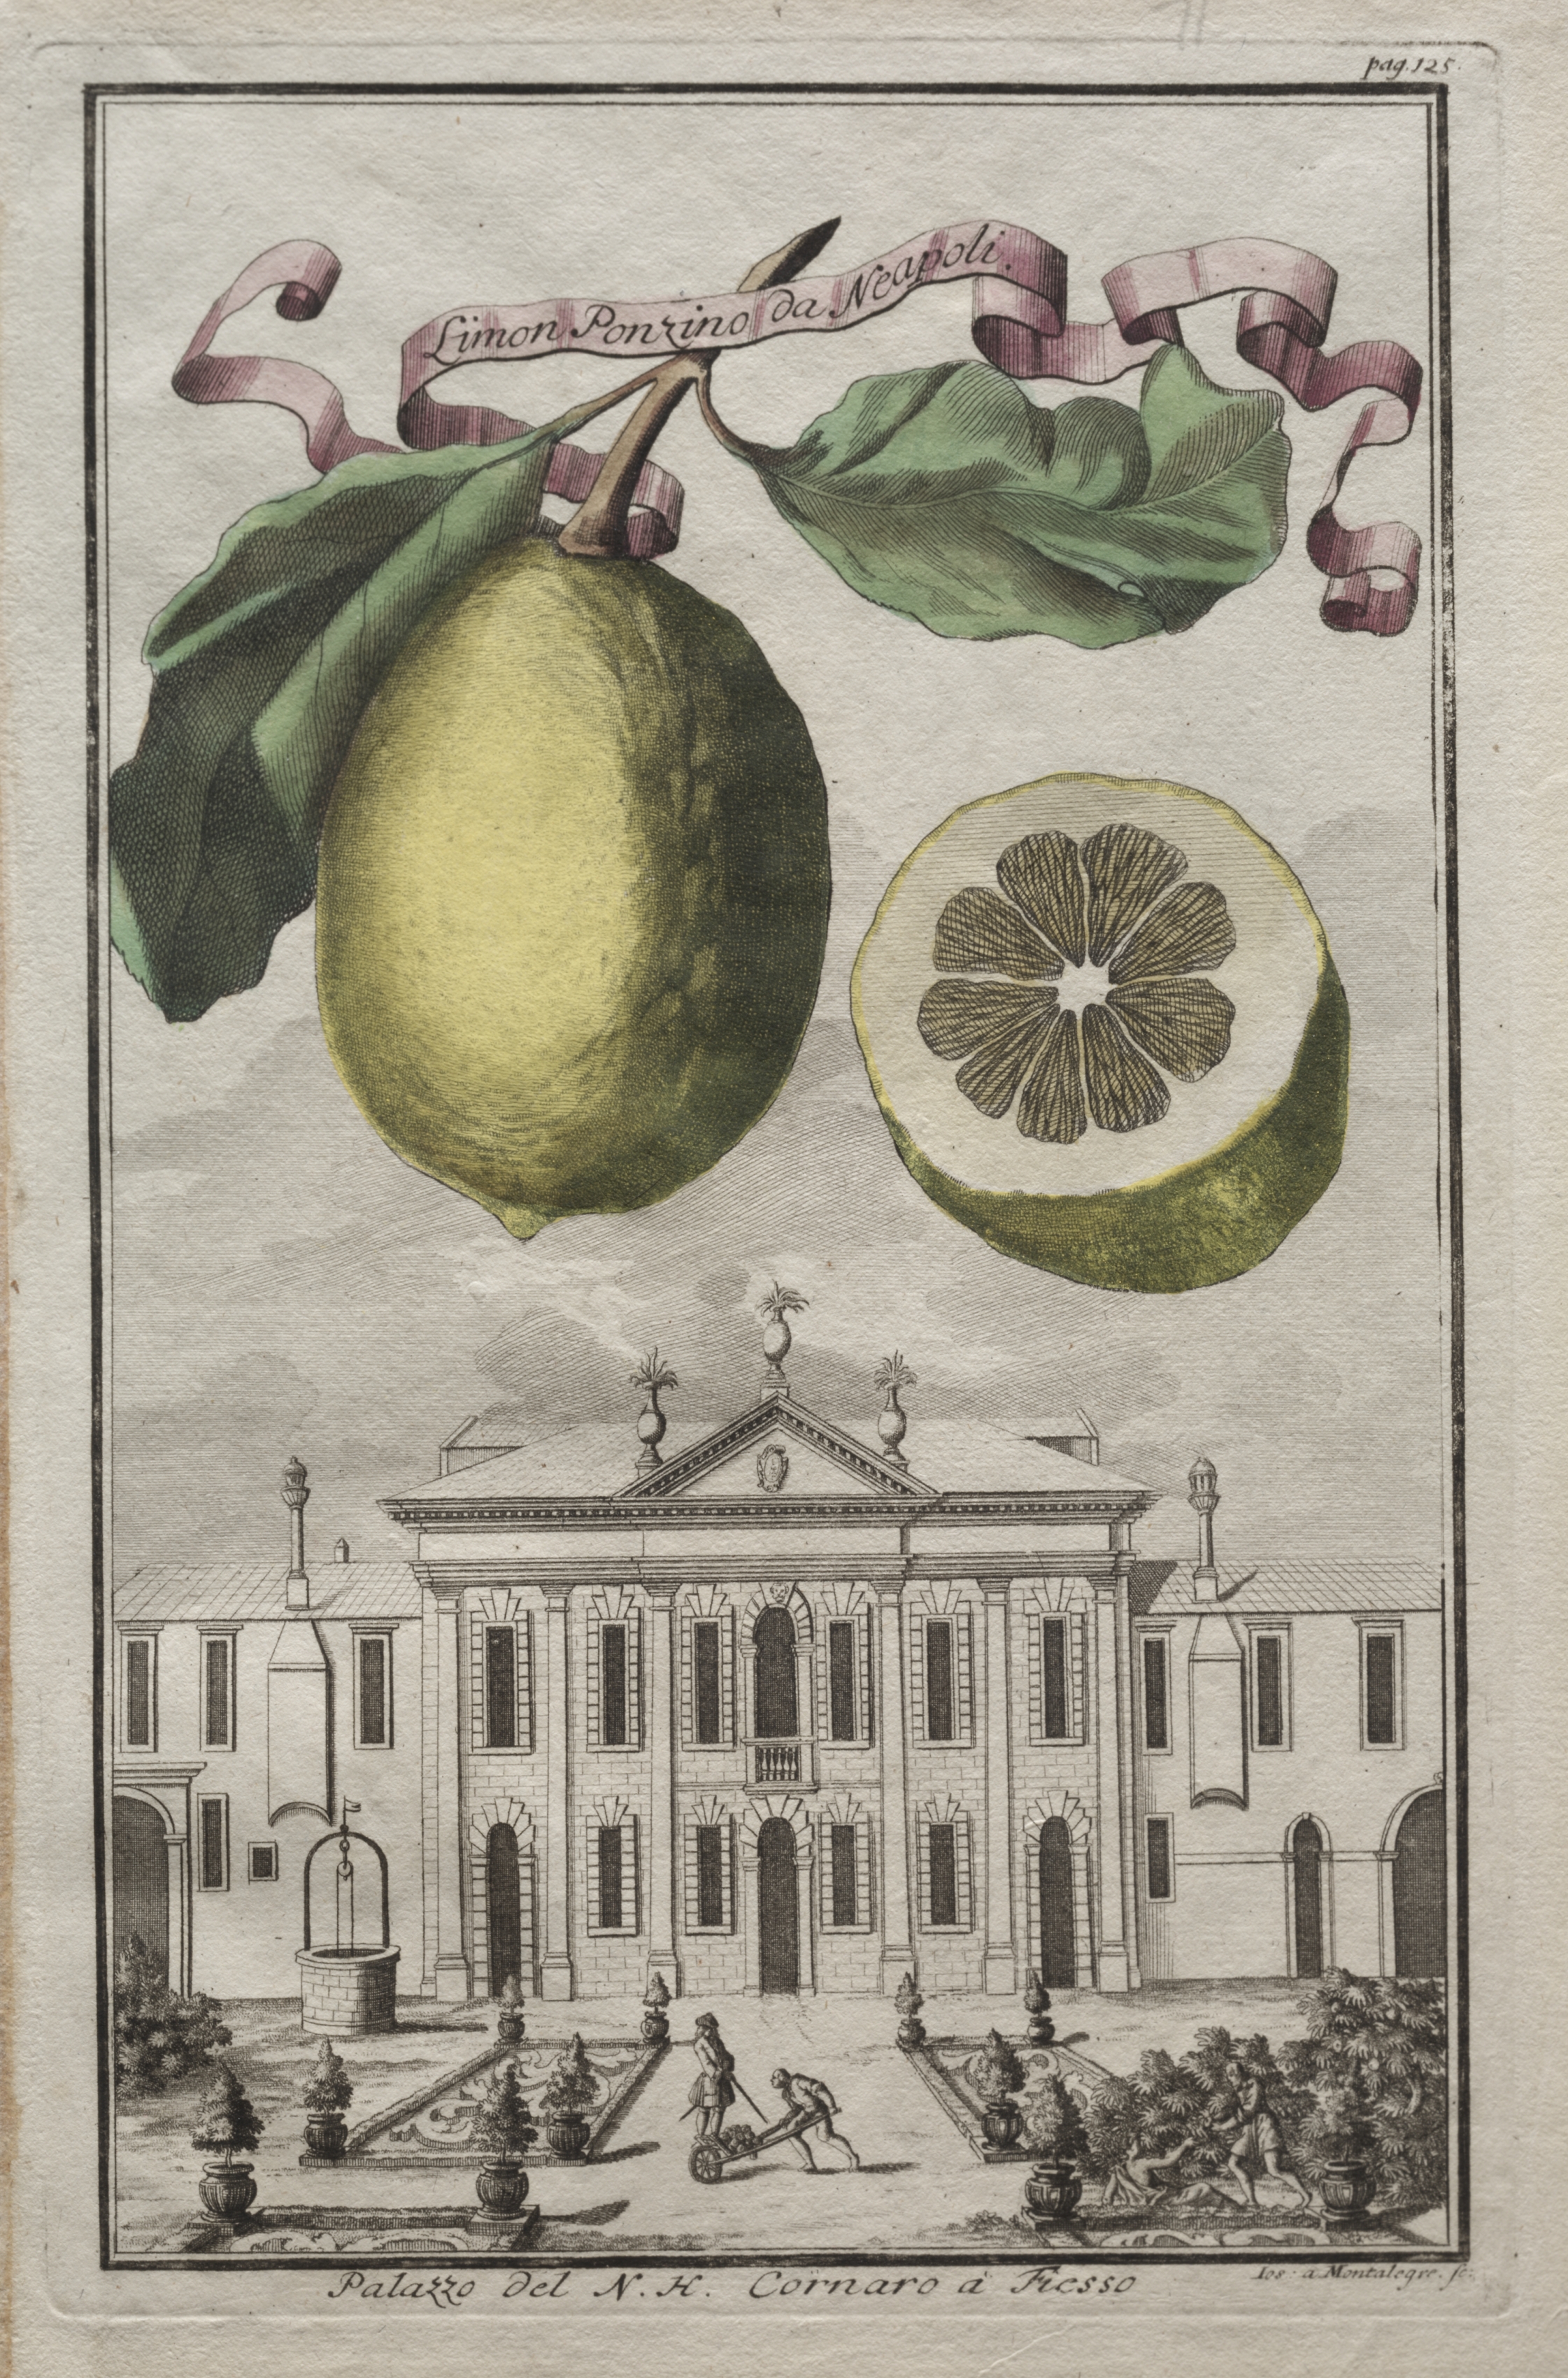 Nurnbergische Hesperides:  No. 125 - Limon Ponzino da Neapoli.  Palazzo del N. H. Cornaro à Fiesso